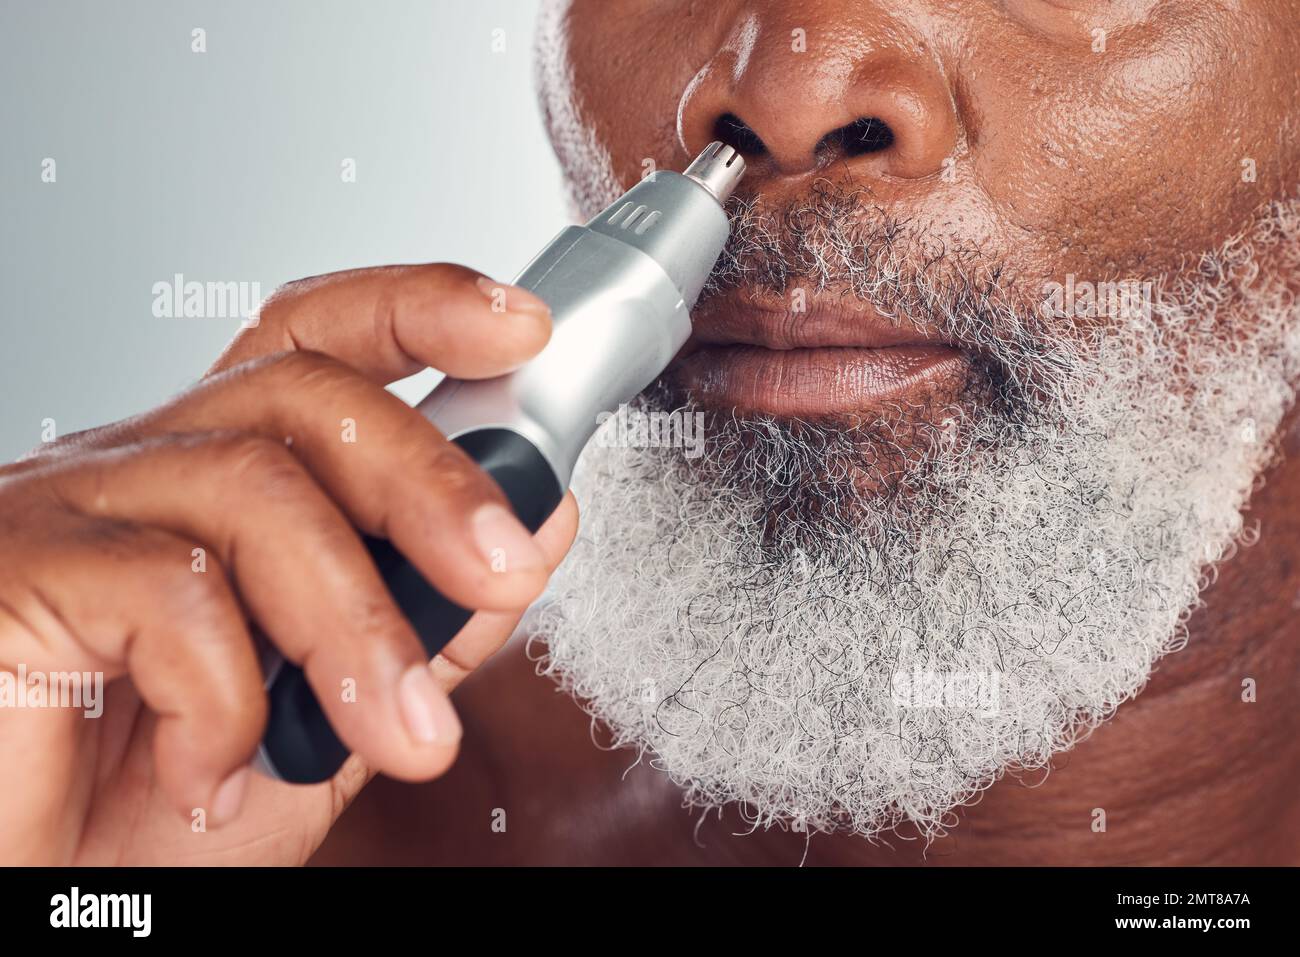 Rasoir pour hommes noirs, tondeuse multistyles et épilation du nez avec  tondeuse électrique pour le rasage, la beauté et les soins de la peau.  Visage de la personne africaine avec des outils